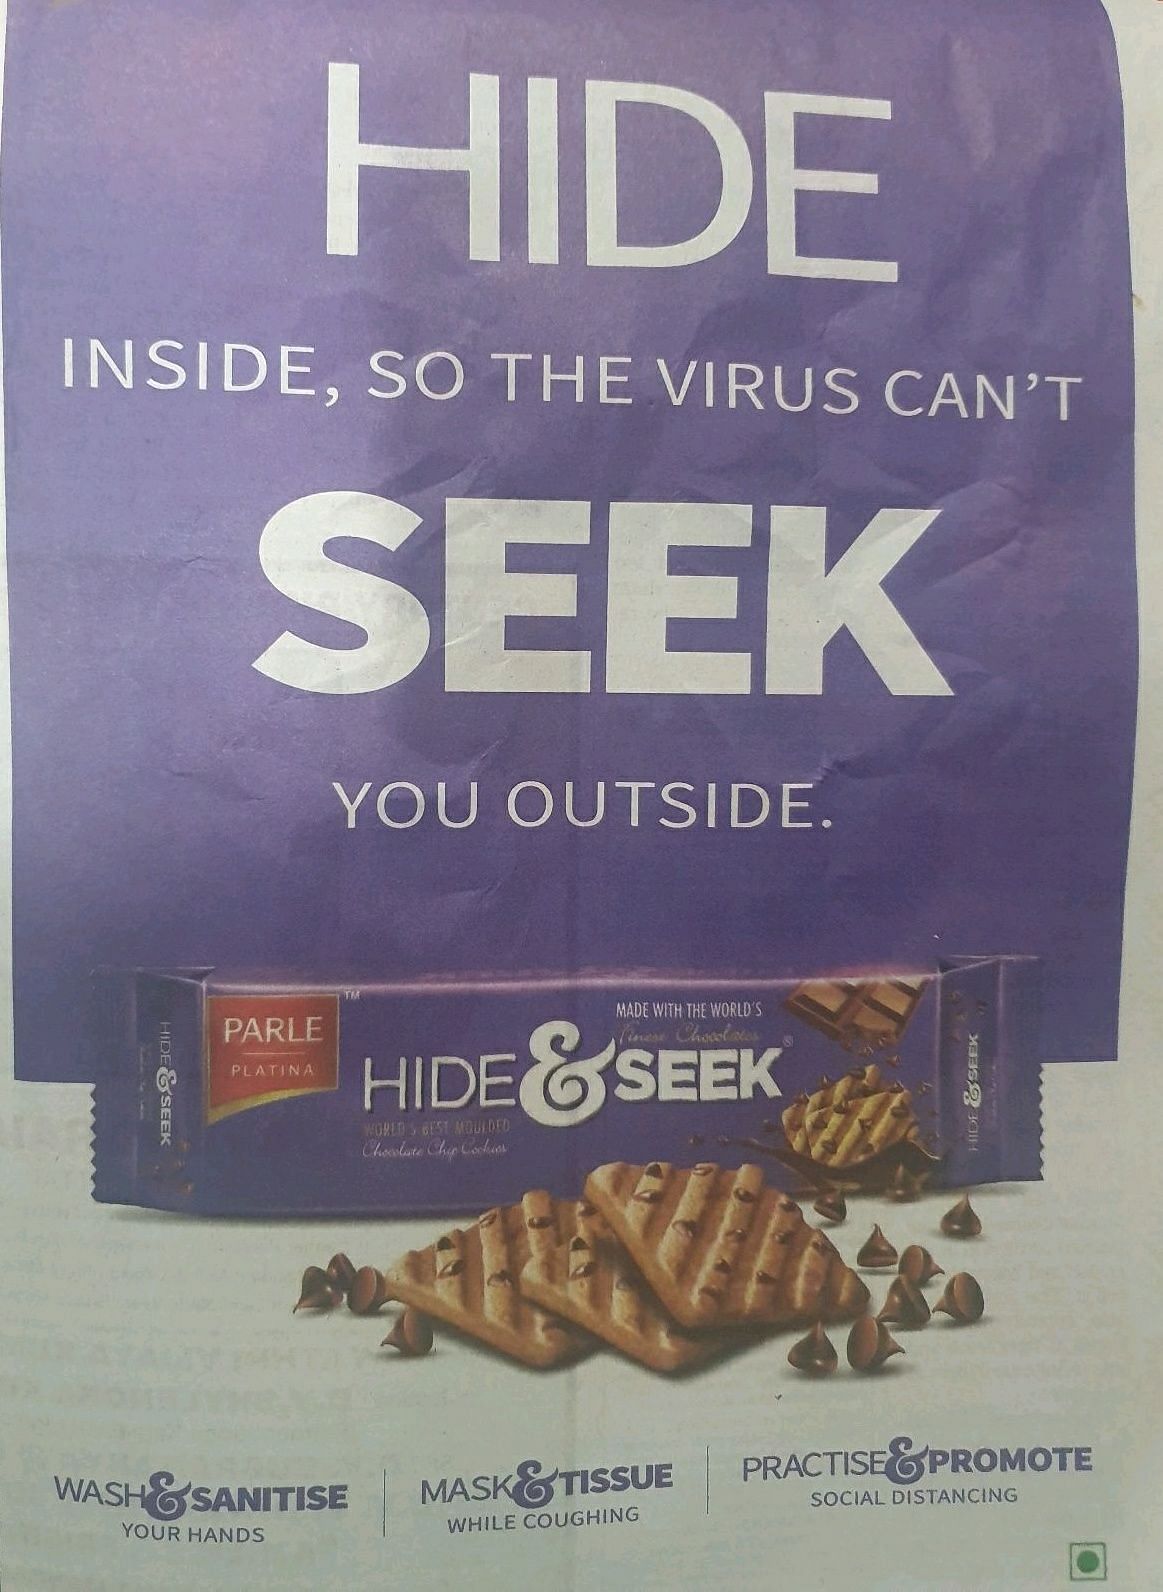 When Hide & Seek told us to hide inside from Coronavirus